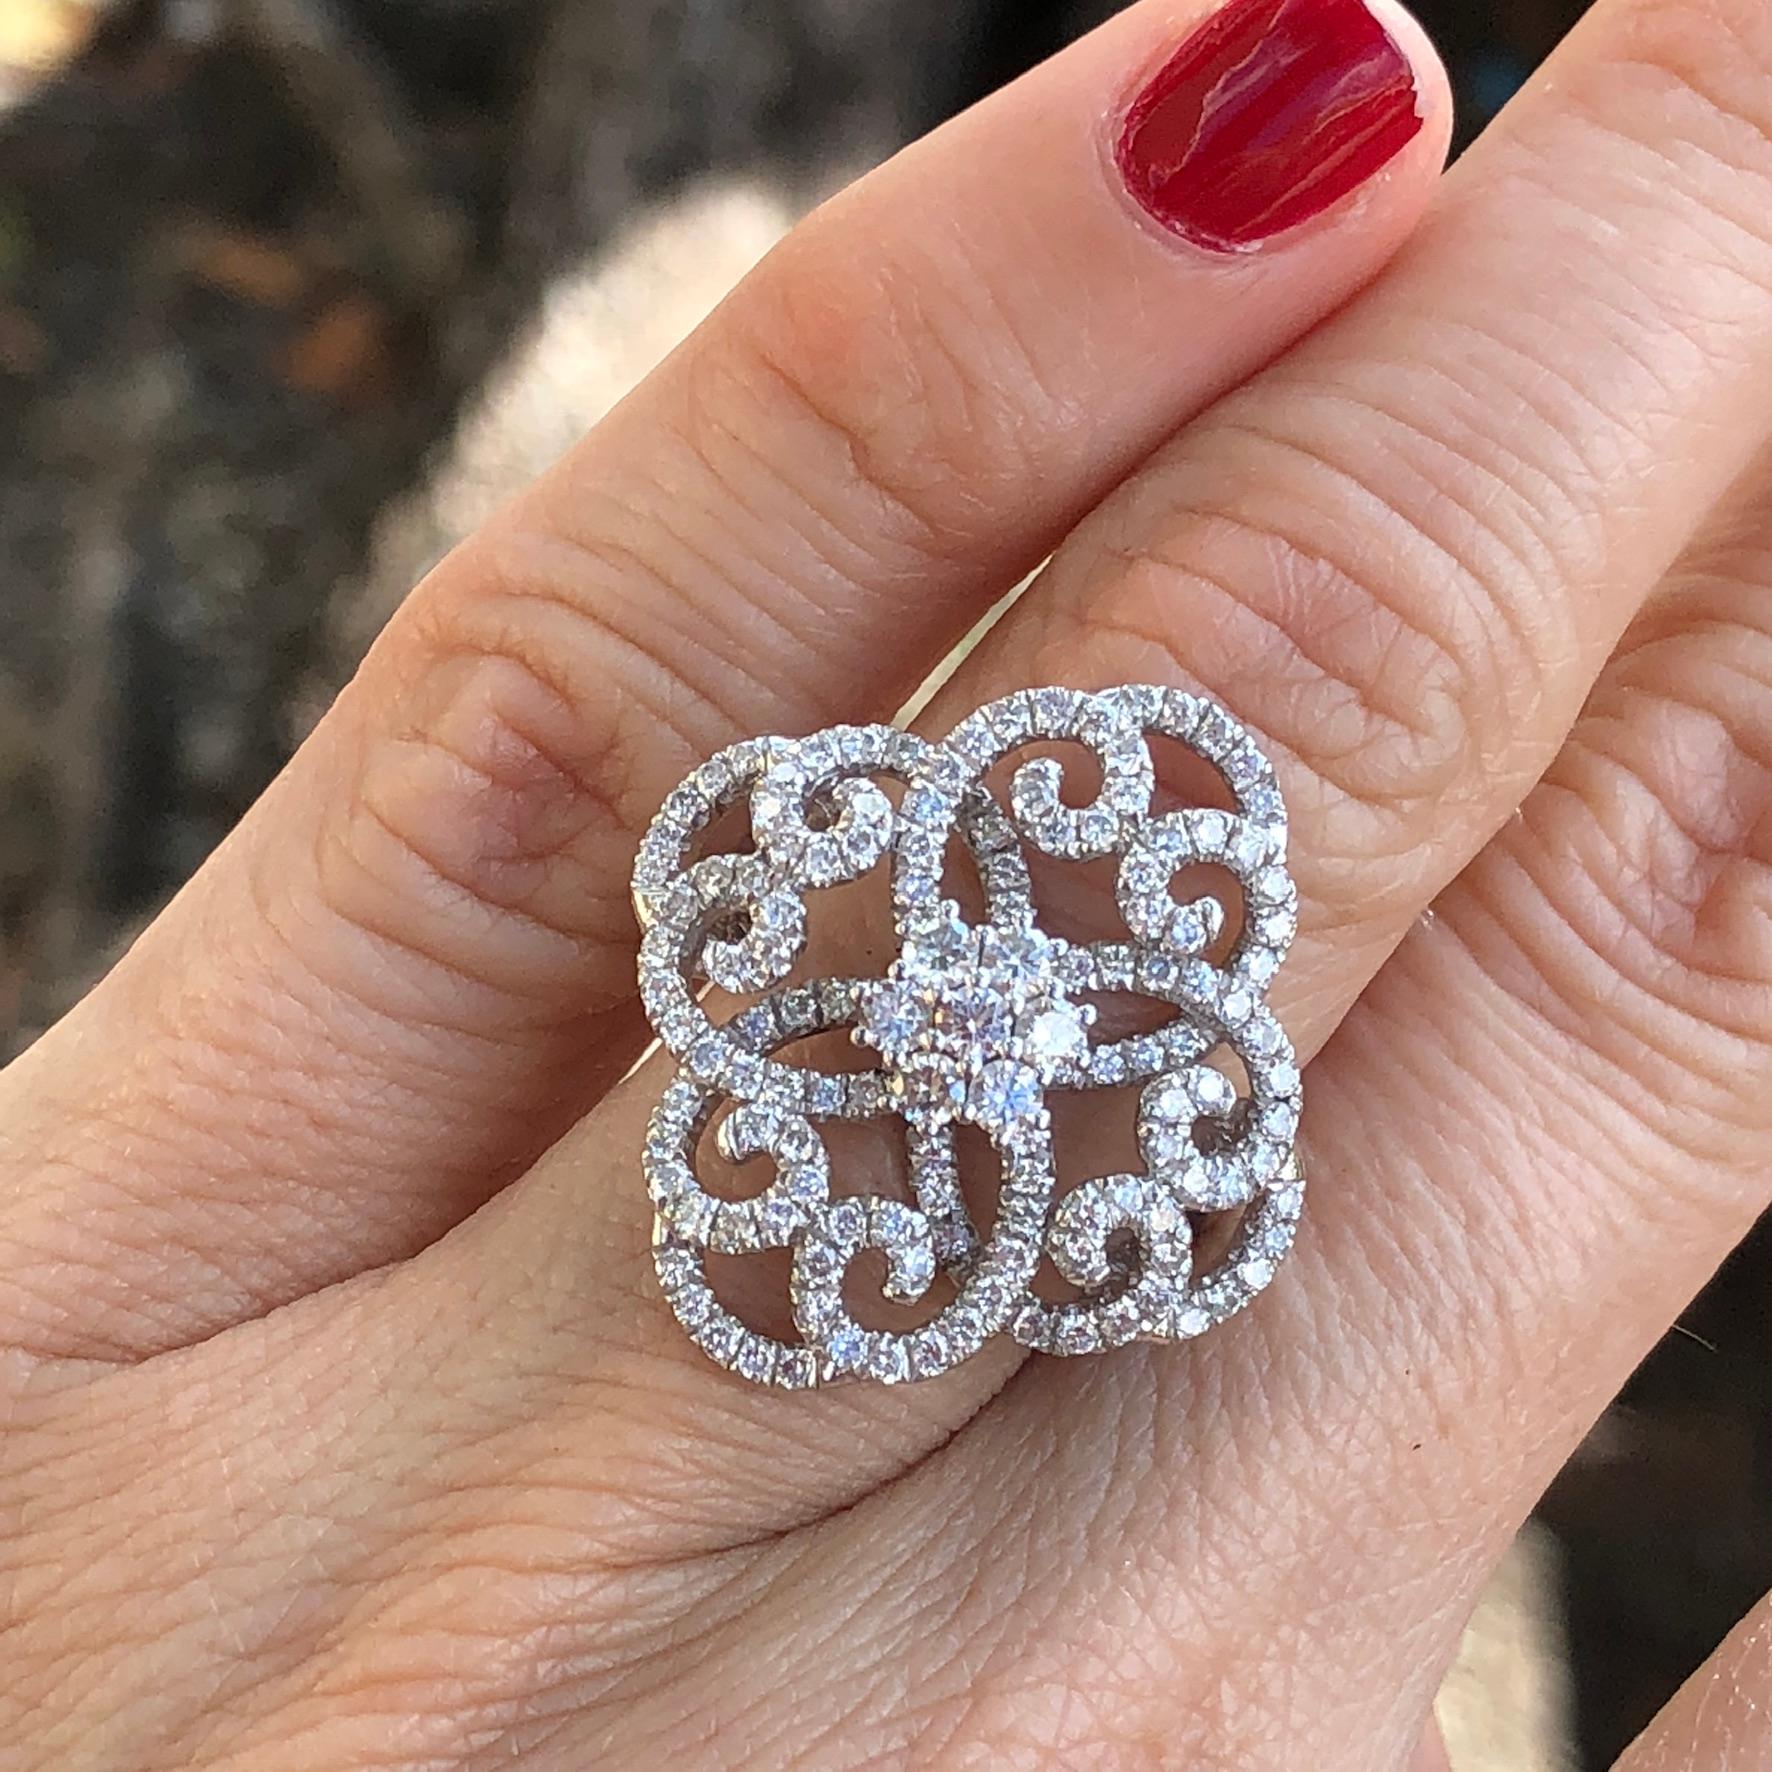 14 karat white gold diamond clover swirls statement ring with diamond cluster center. 

Features
14K white gold
1.50 carat total weight in diamonds
Ring size 6.5 